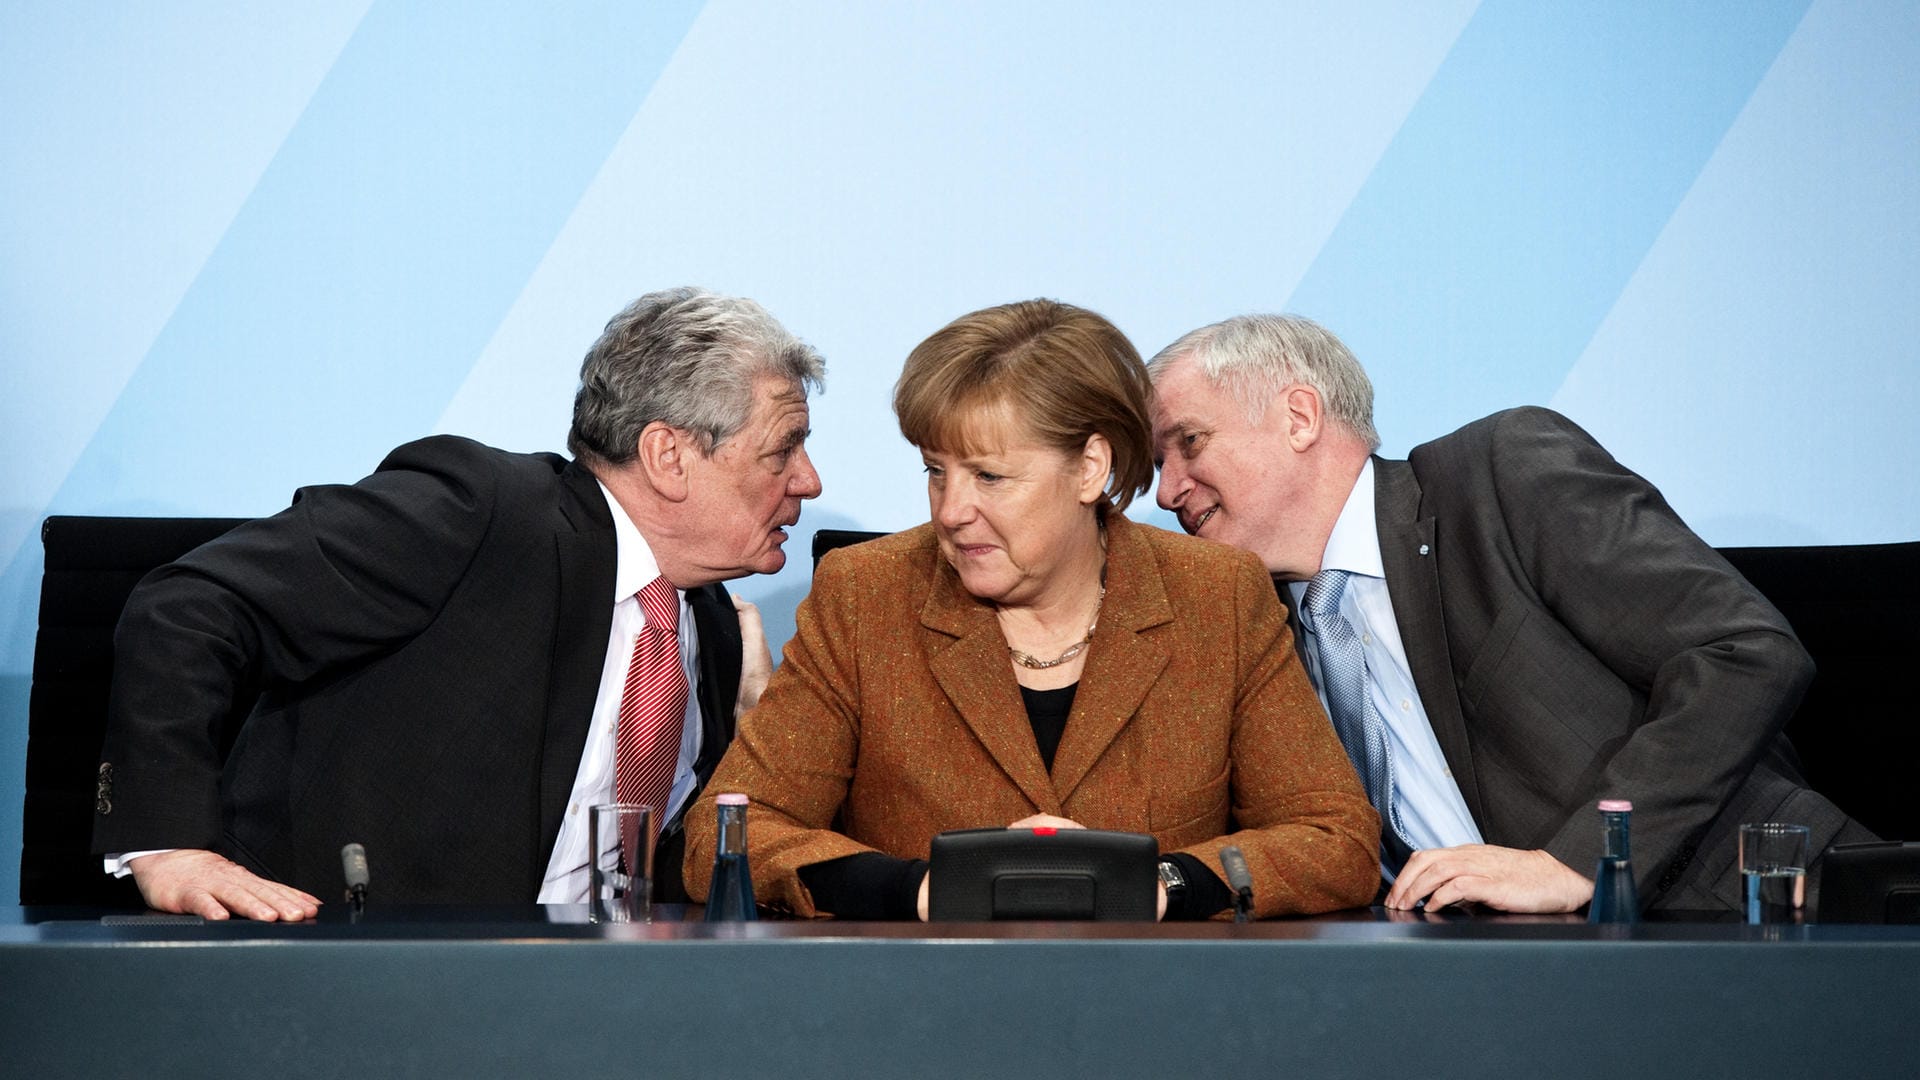 17. Februar 2012: Bundespräsident Wulff tritt zurück, weil er im Verdacht steht, Vergünstigungen von Unternehmern angenommen zu haben. Der Koalitionspartner FDP stellt sich hinter den Vorschlag von SPD und Grünen, Joachim Gauck als Nachfolger zu wählen. Die CDU-Chefin will ihn eigentlich nicht unterstützen, lenkt aber ein. In ihrer Kanzlerschaft erlebt Merkel vier deutsche Staatsoberhäupter.